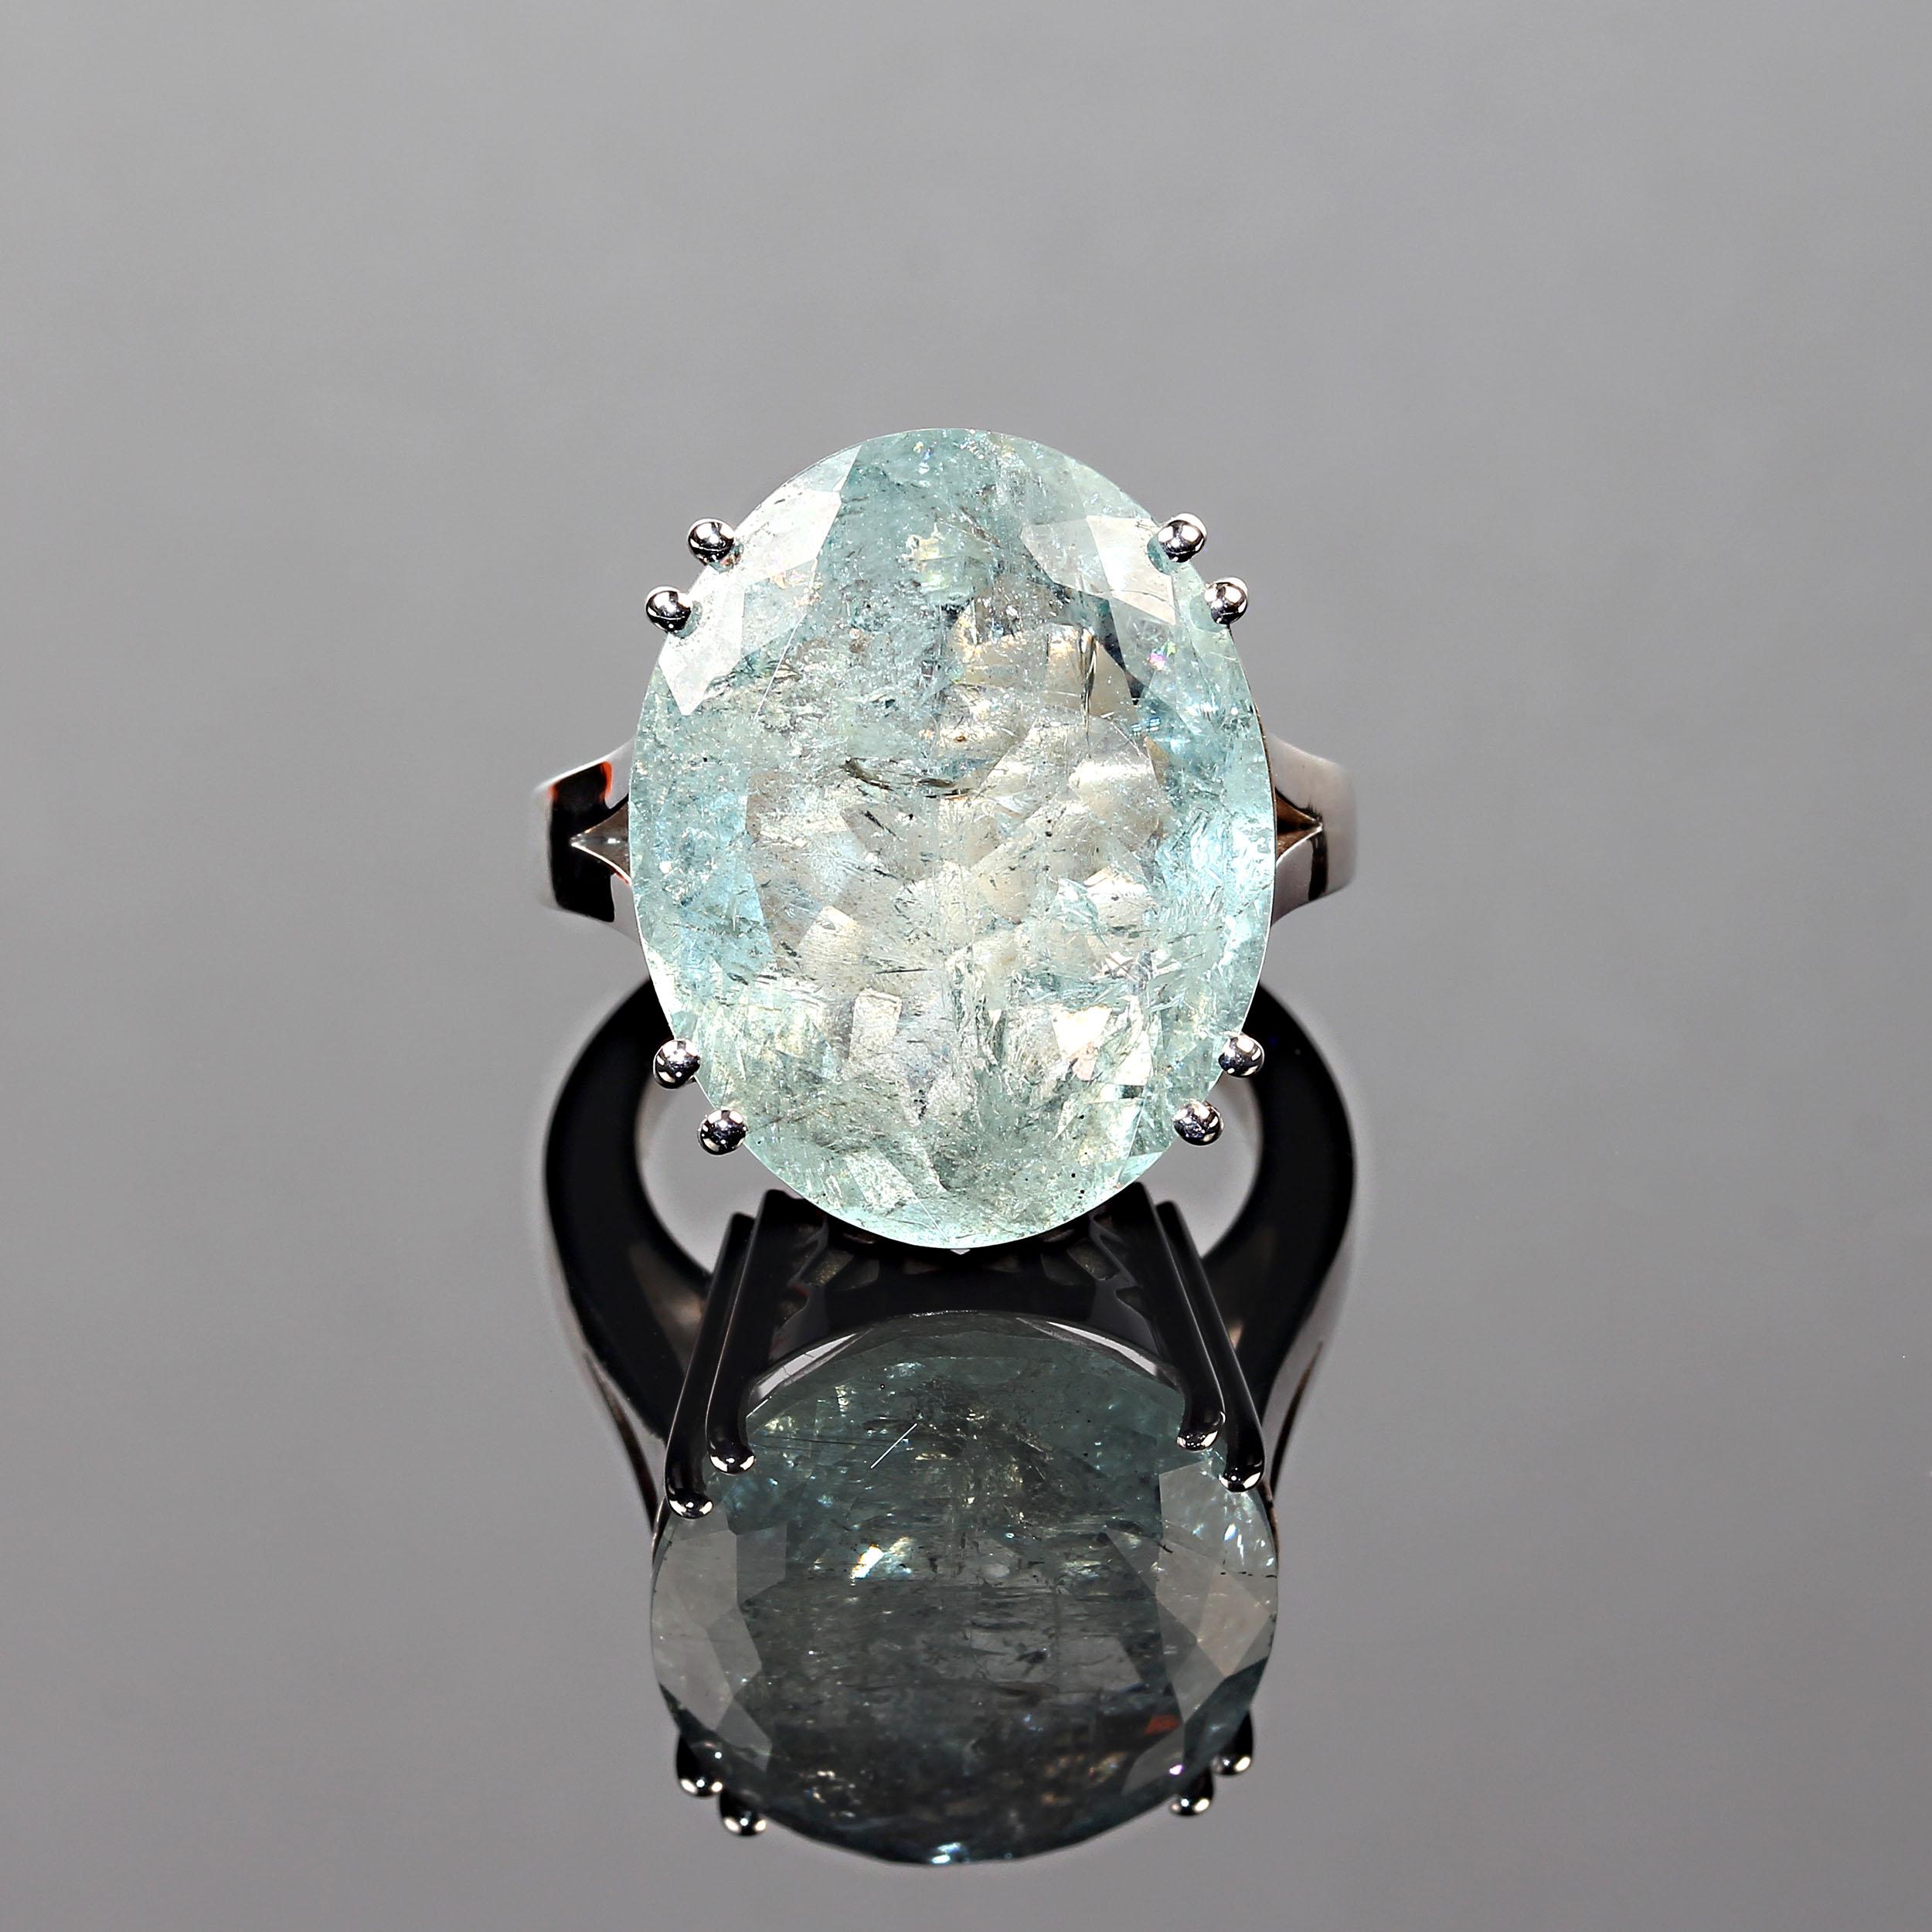 AJD 25 Karat Blau-grüner ovaler Beryll in elegantem Sterlingsilber-Ring (Kunsthandwerker*in)